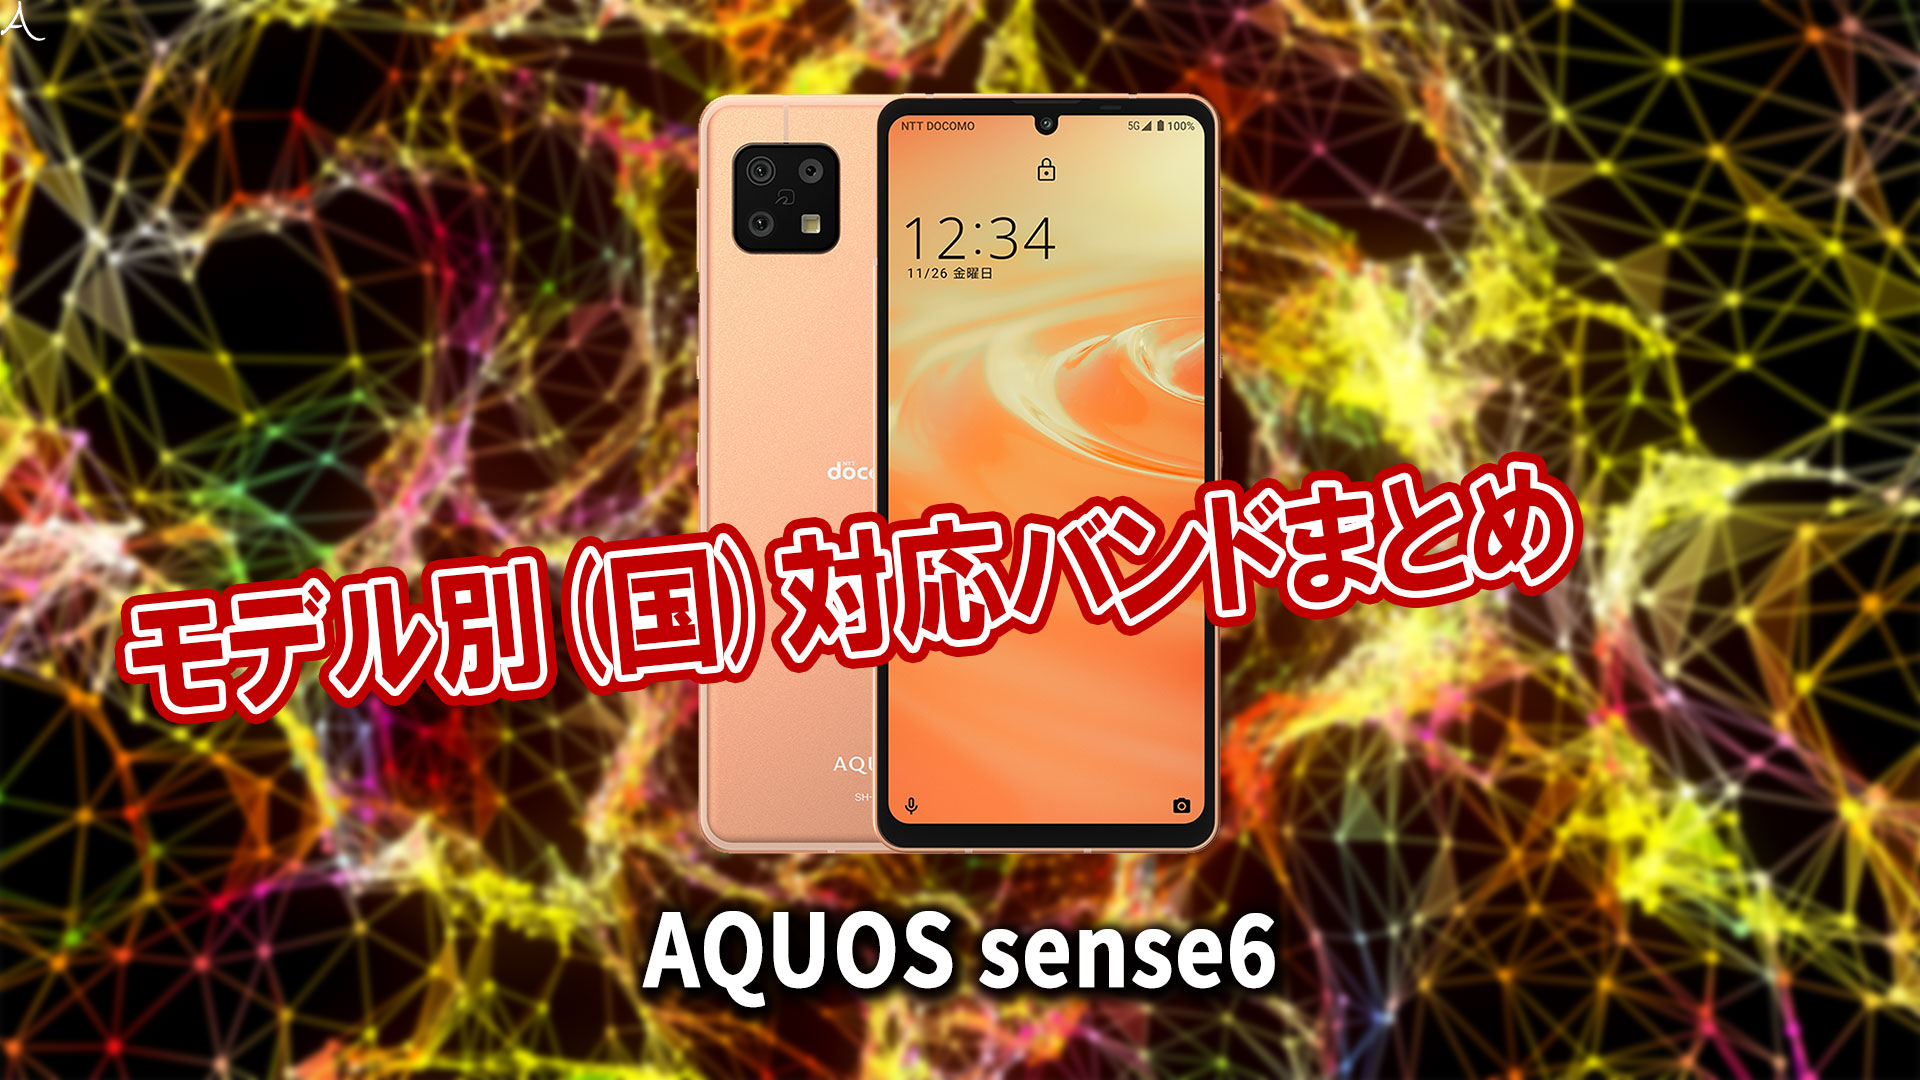 AQUOS sense6｣の4G[LTE]/5G対応バンドまとめ - ミリ波には対応してる 